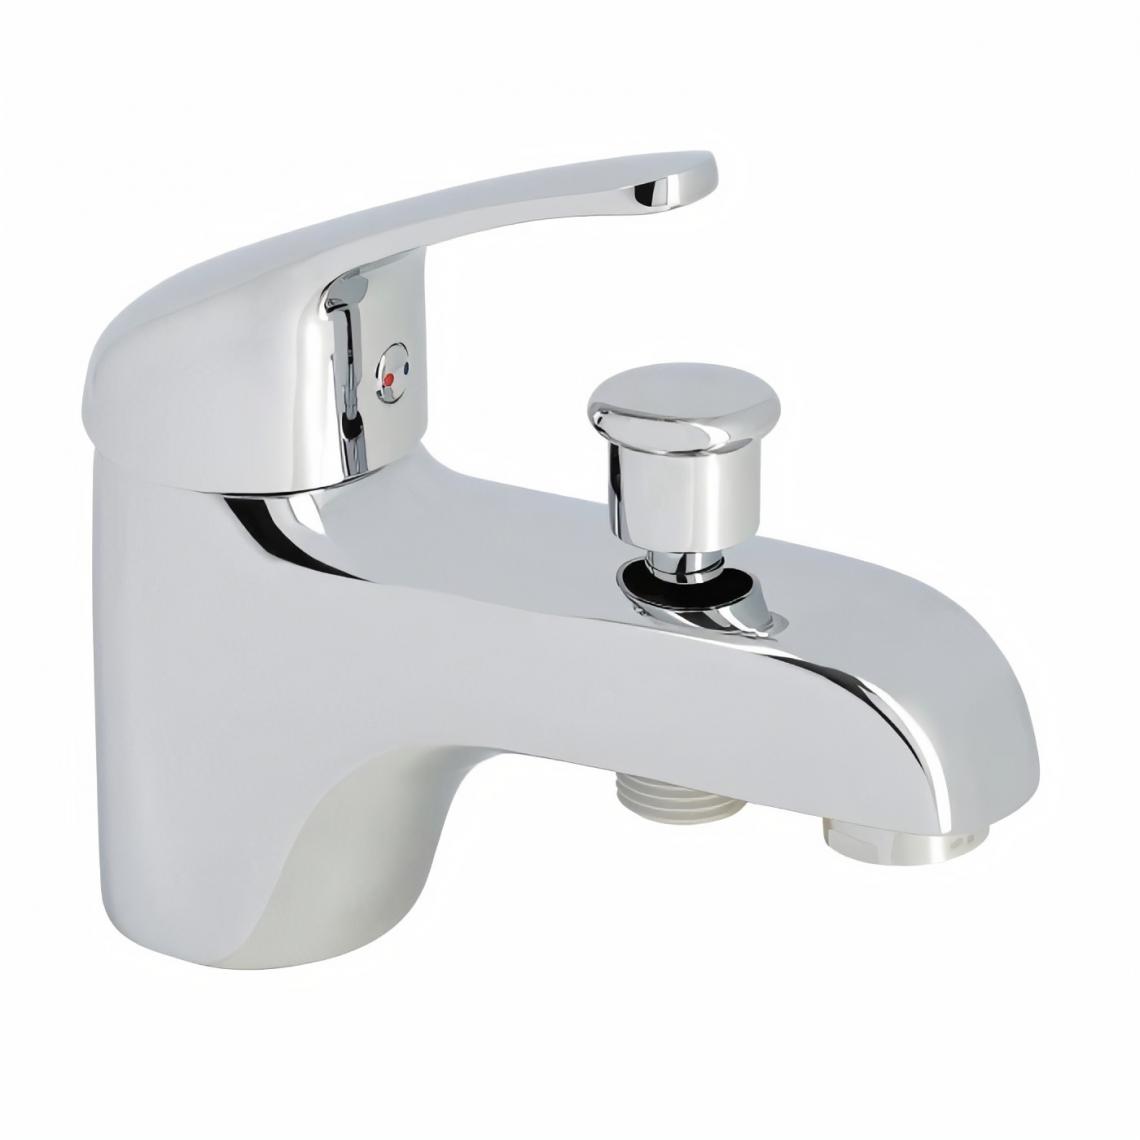 Rousseau - Robinet mitigeur mécanique baignoire et douche - Chromé - Monotrou NF - Accessoires de salle de bain